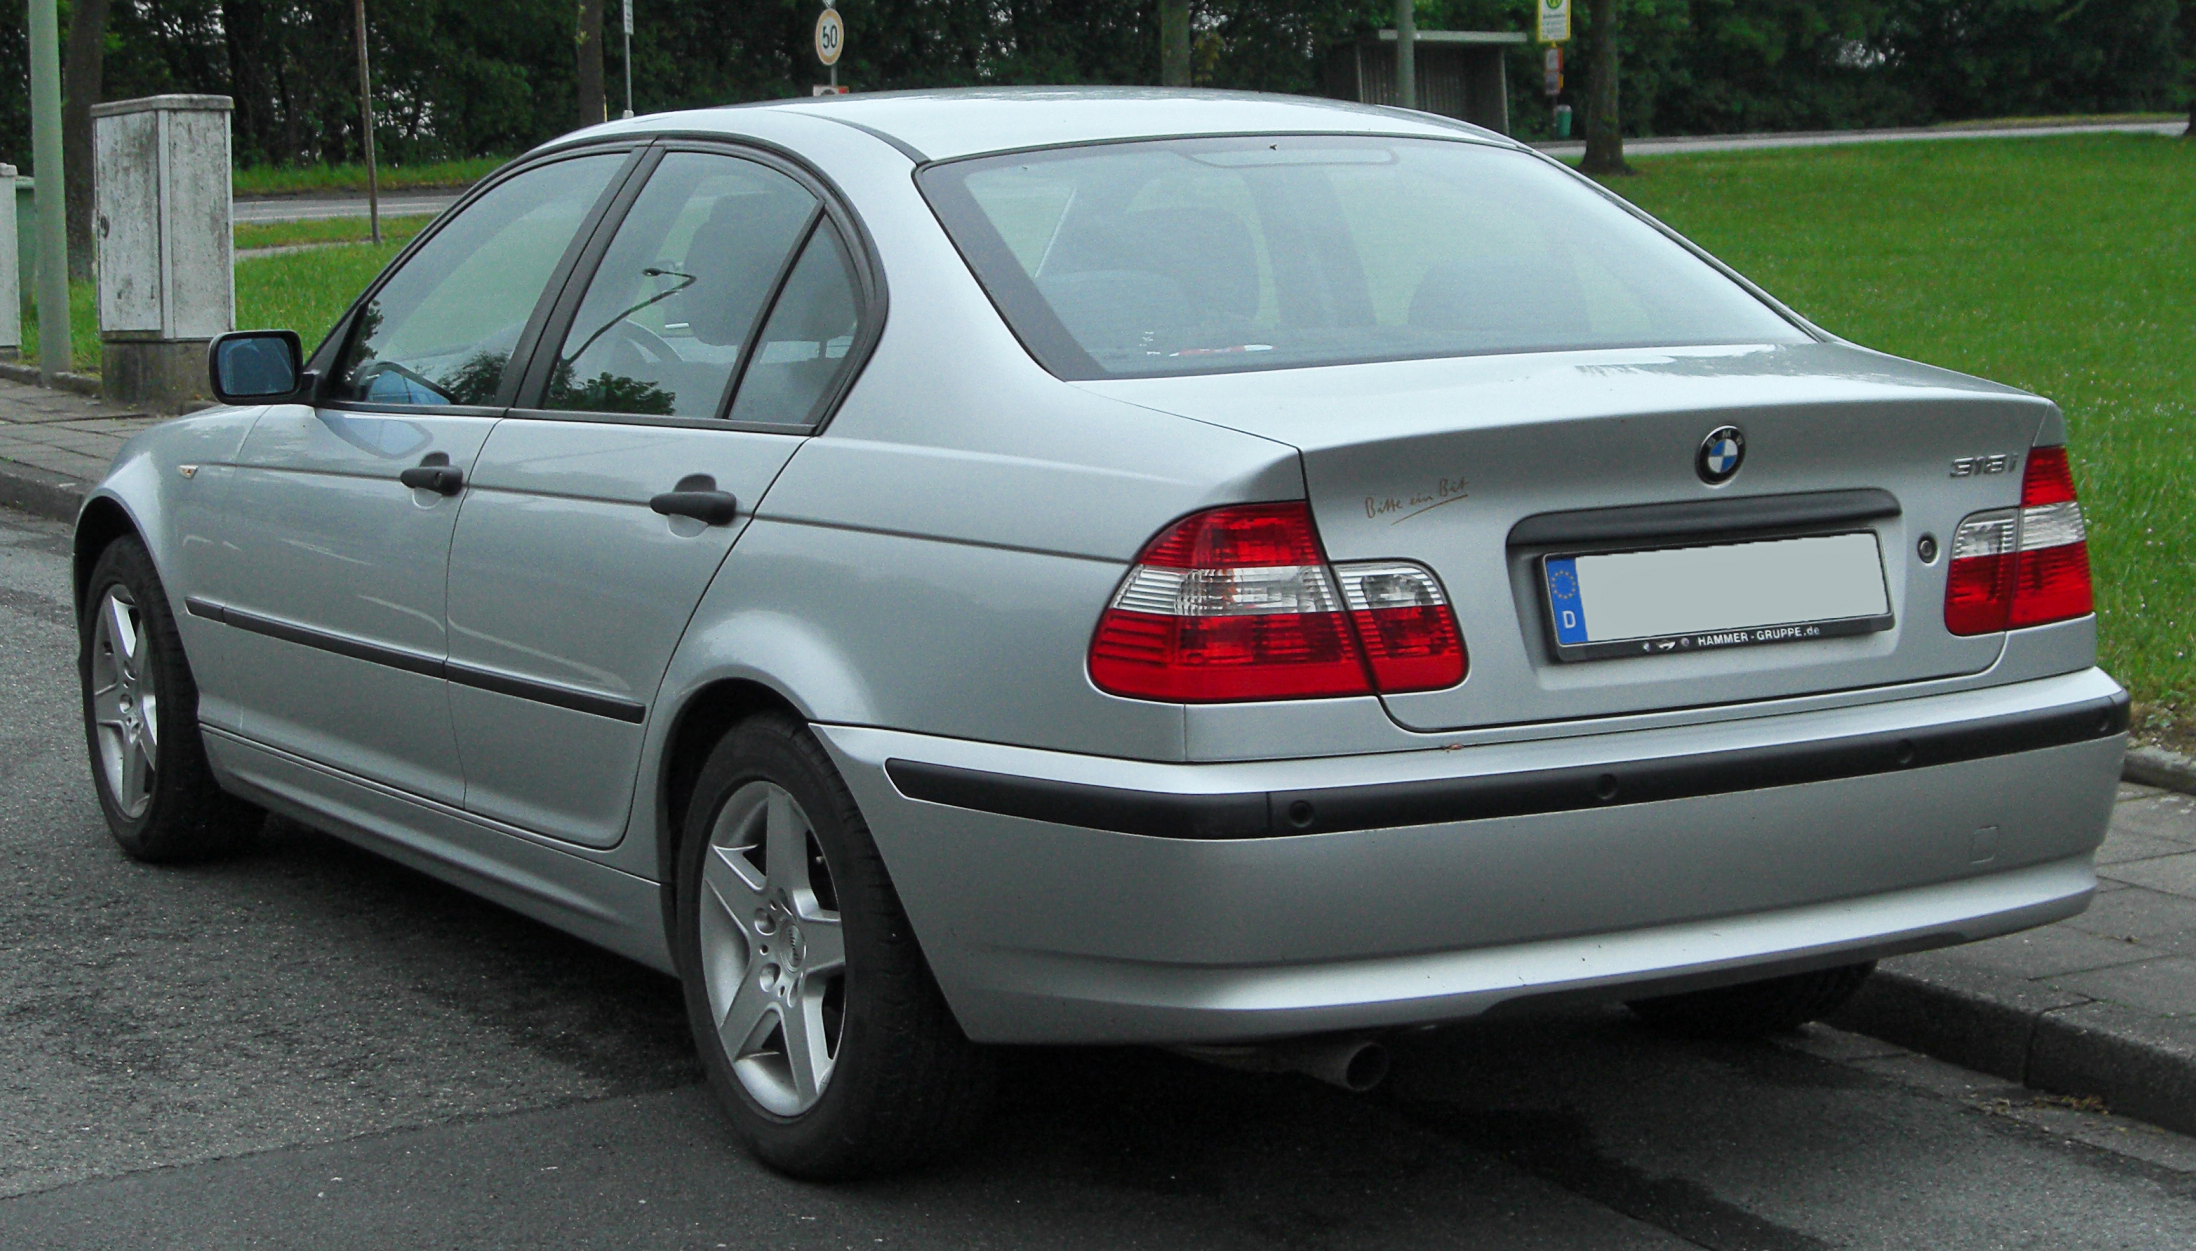 File:BMW 318i (E46) Facelift rear 20100507.jpg